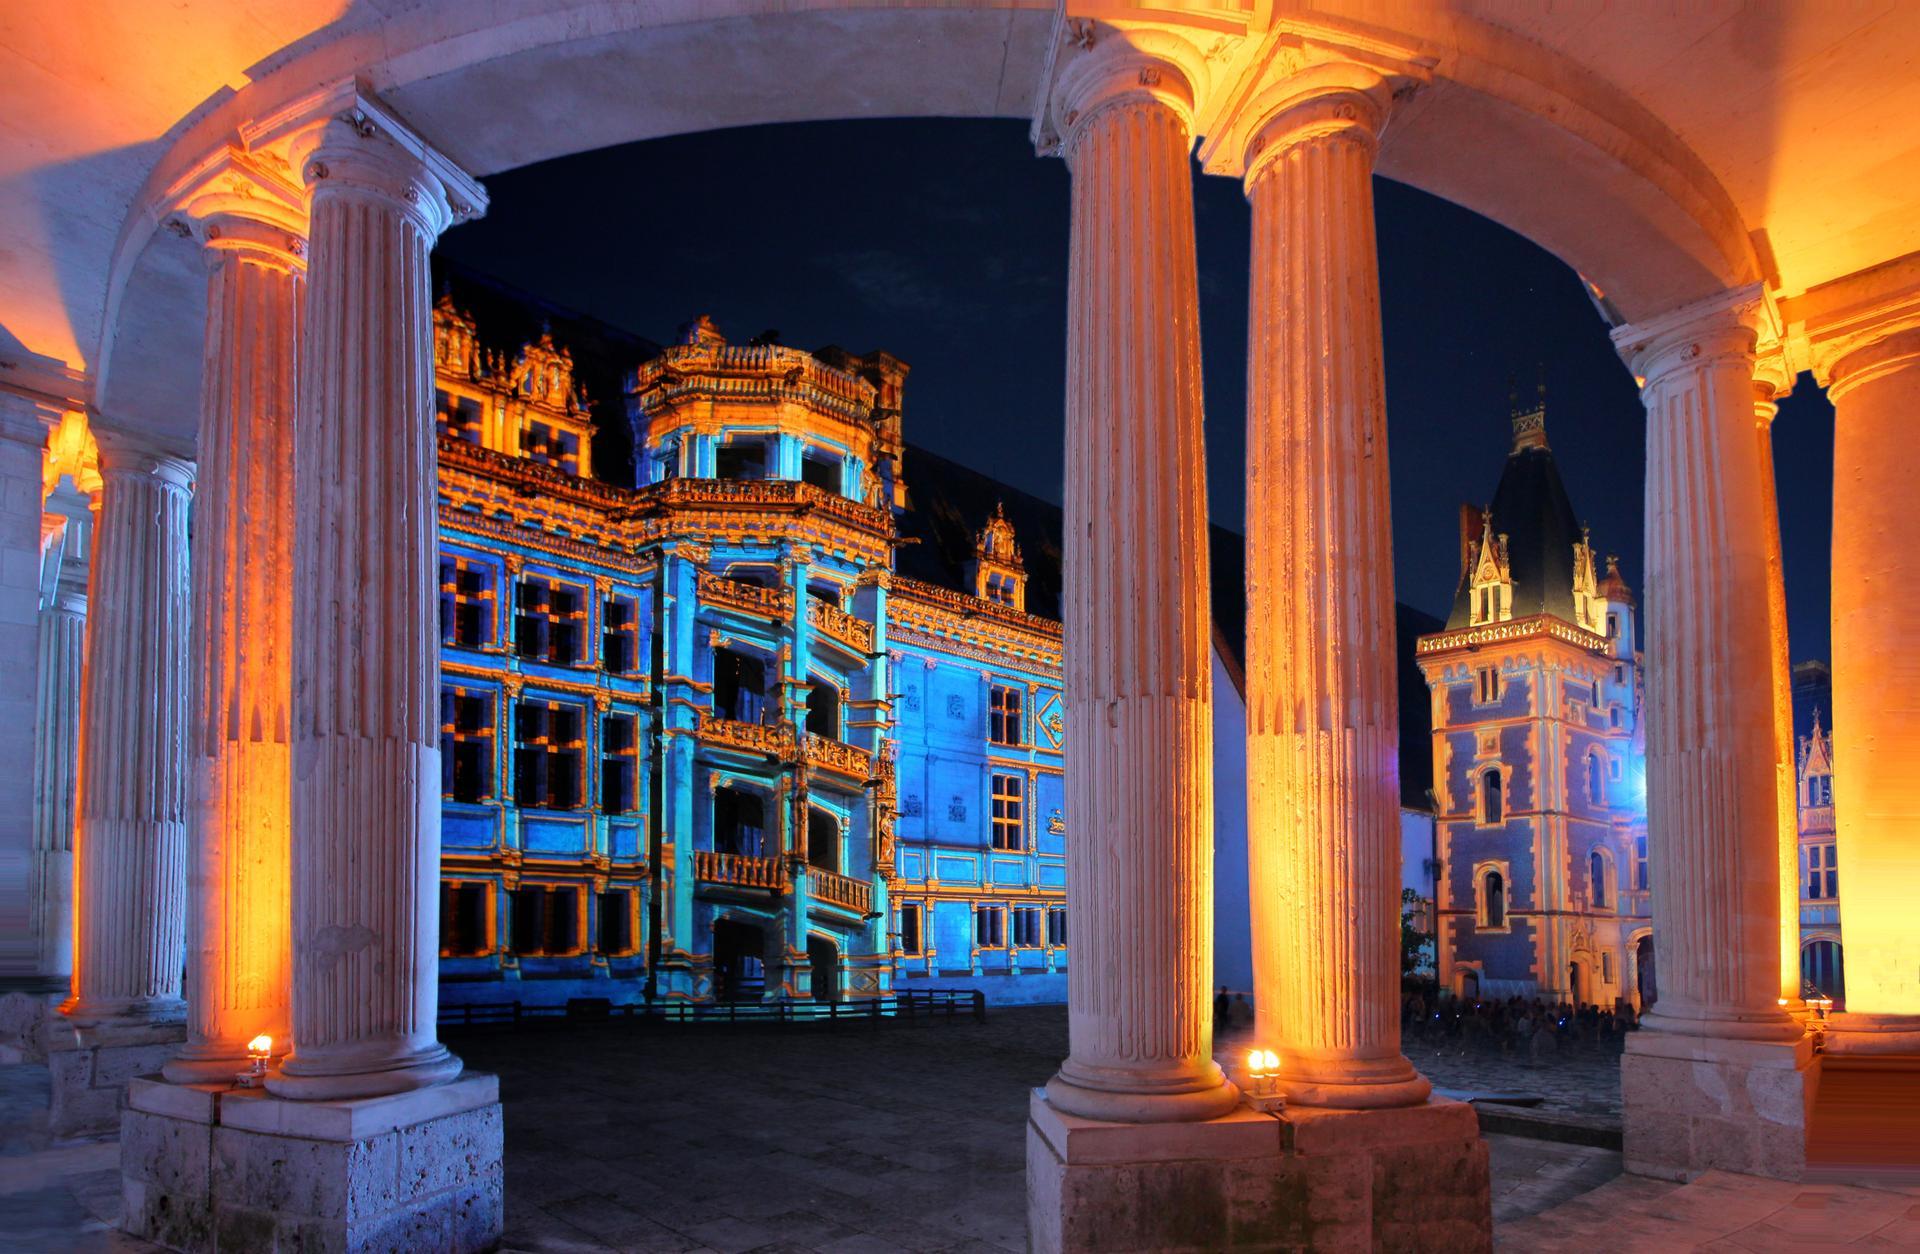 Spectacle son et lumière de Blois